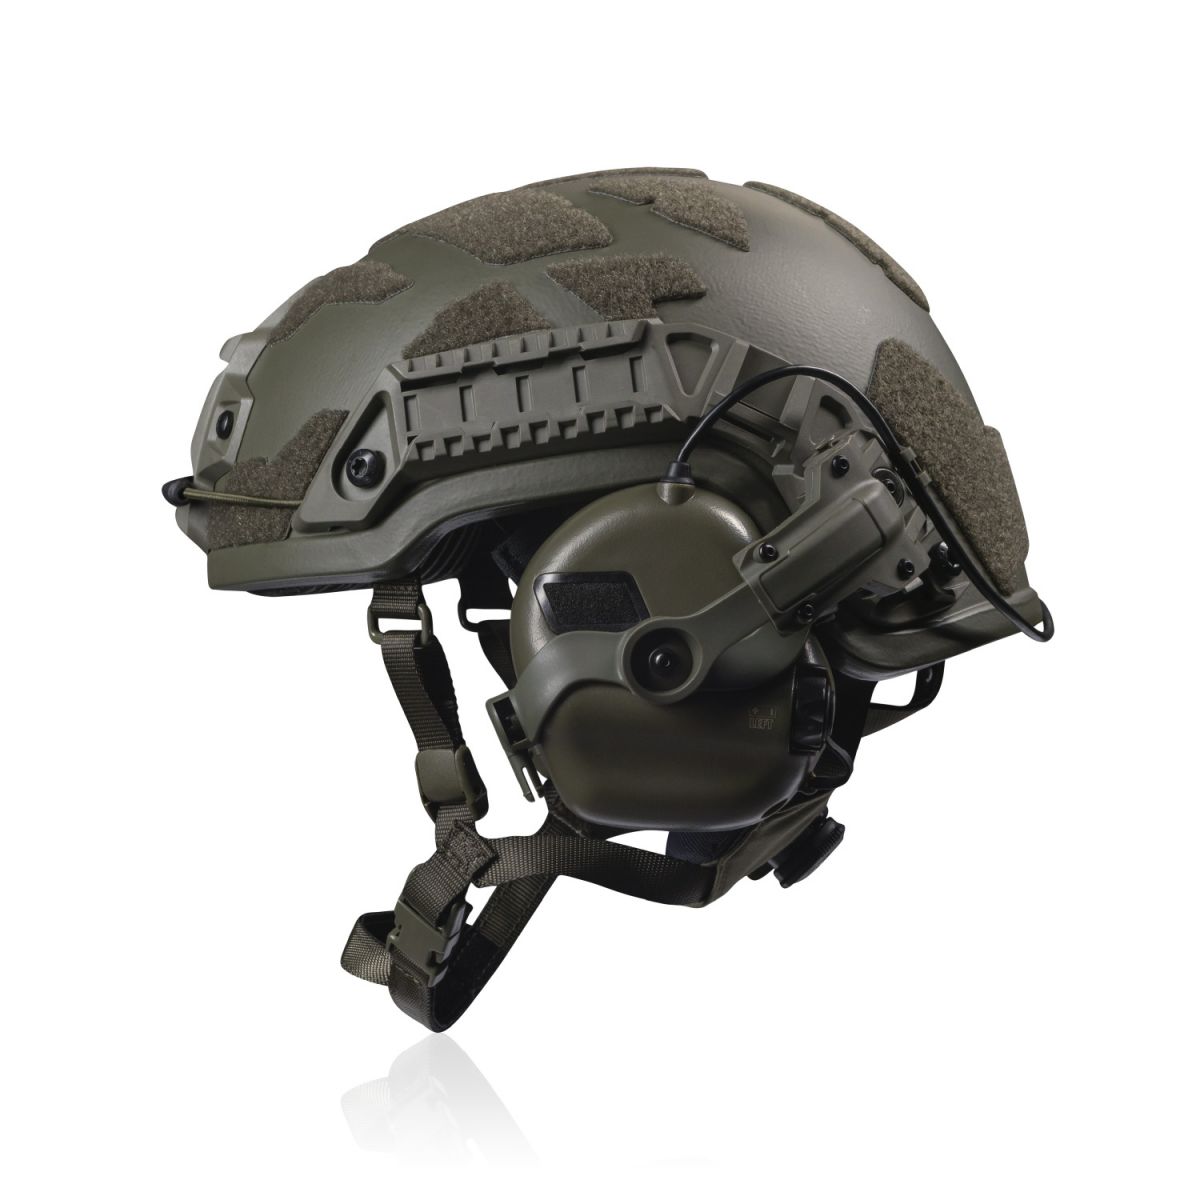 Кевларовый шлем ARCH Helmet L (ECH) с вырезом под активные наушники. Олива 4